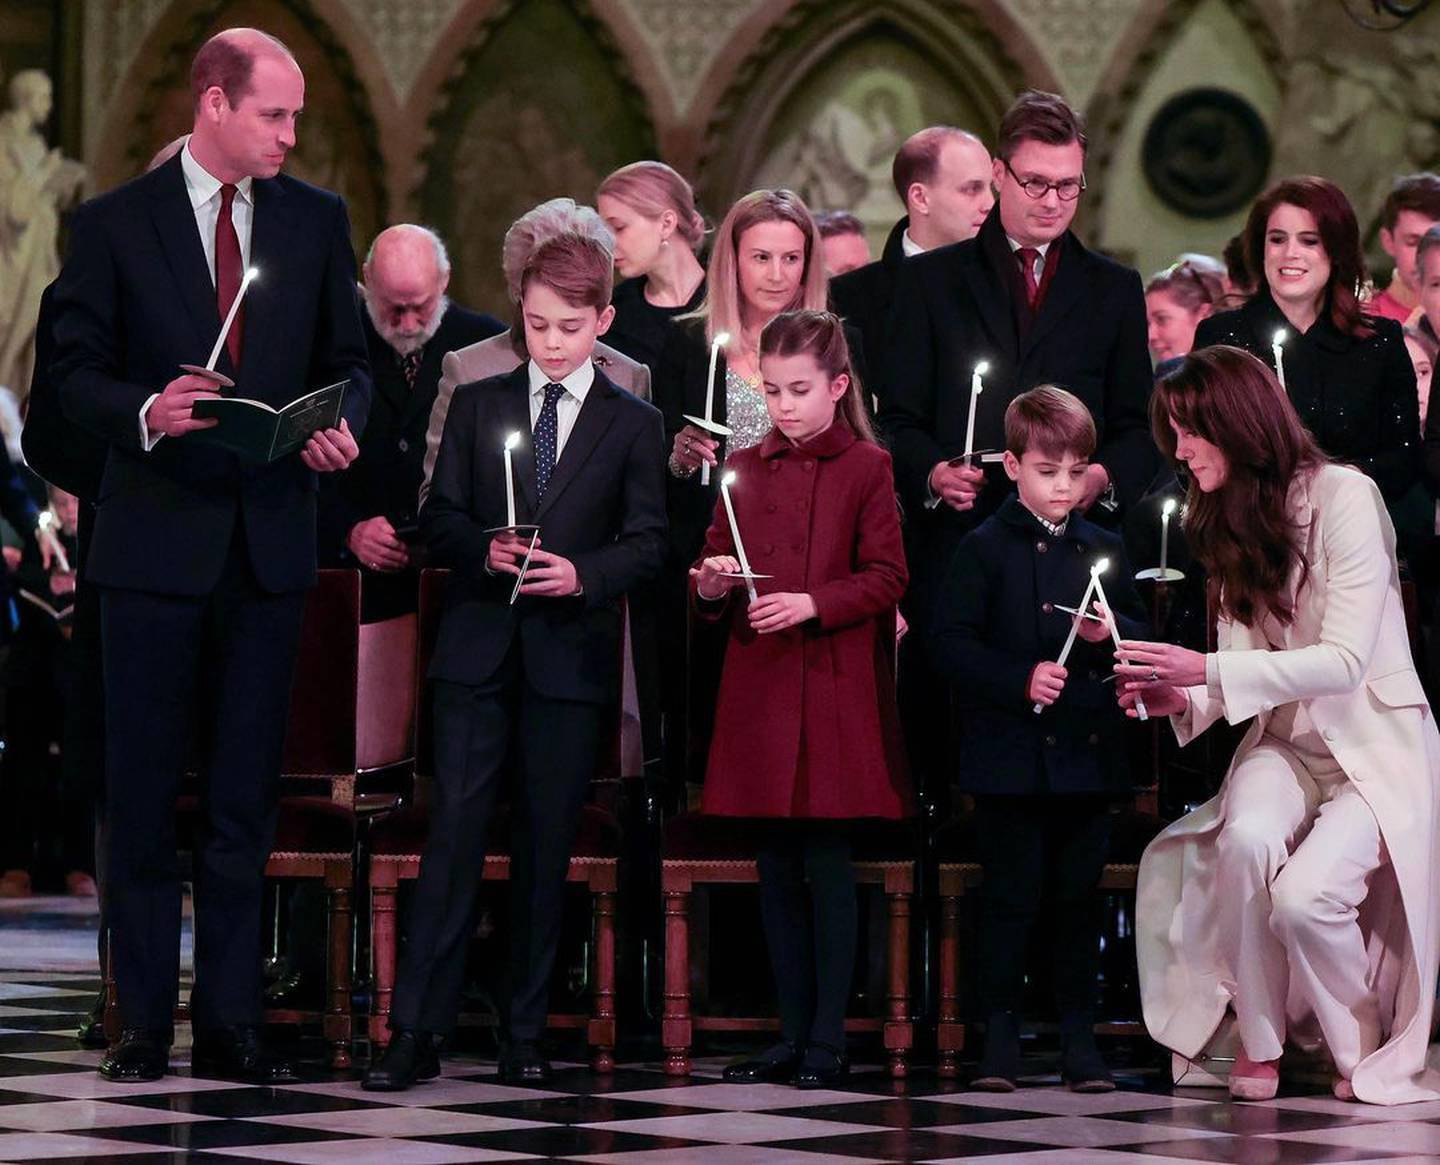 Principes William y Kate junto a su familia cantando villancicos